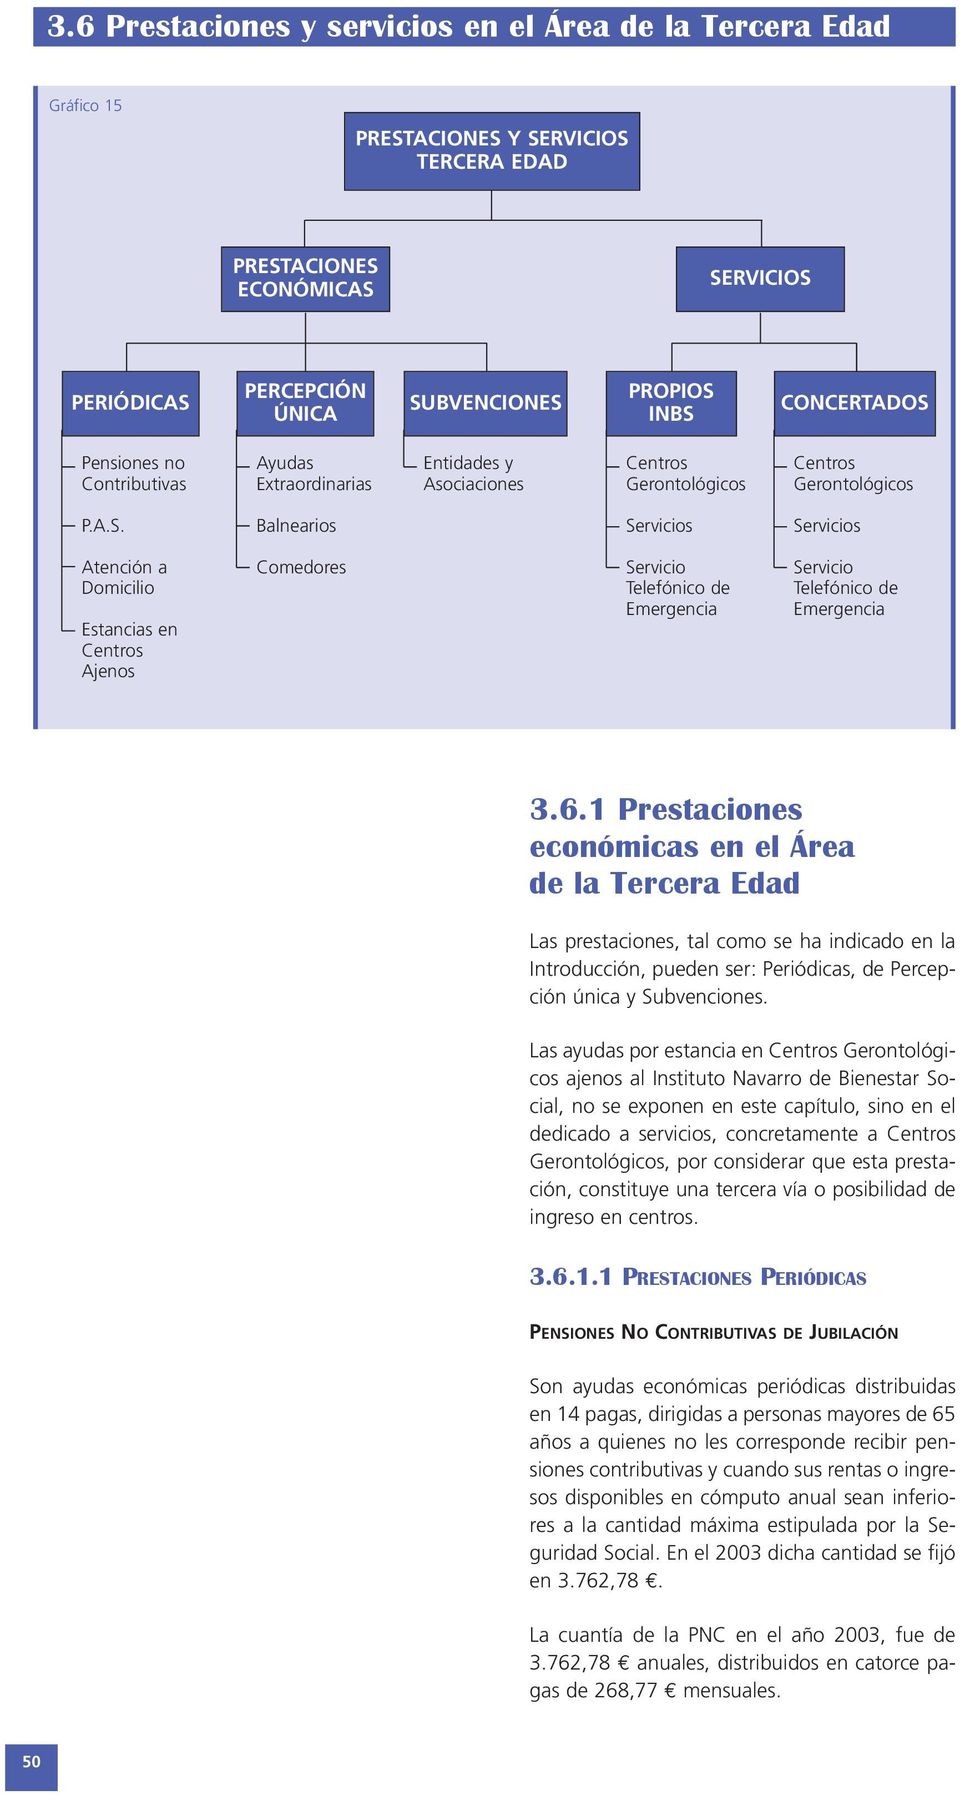 6.1 Prestaciones económicas en el Área de la Tercera Edad Las prestaciones, tal como se ha indicado en la Introducción, pueden ser: Periódicas, de Percepción única y Subvenciones.